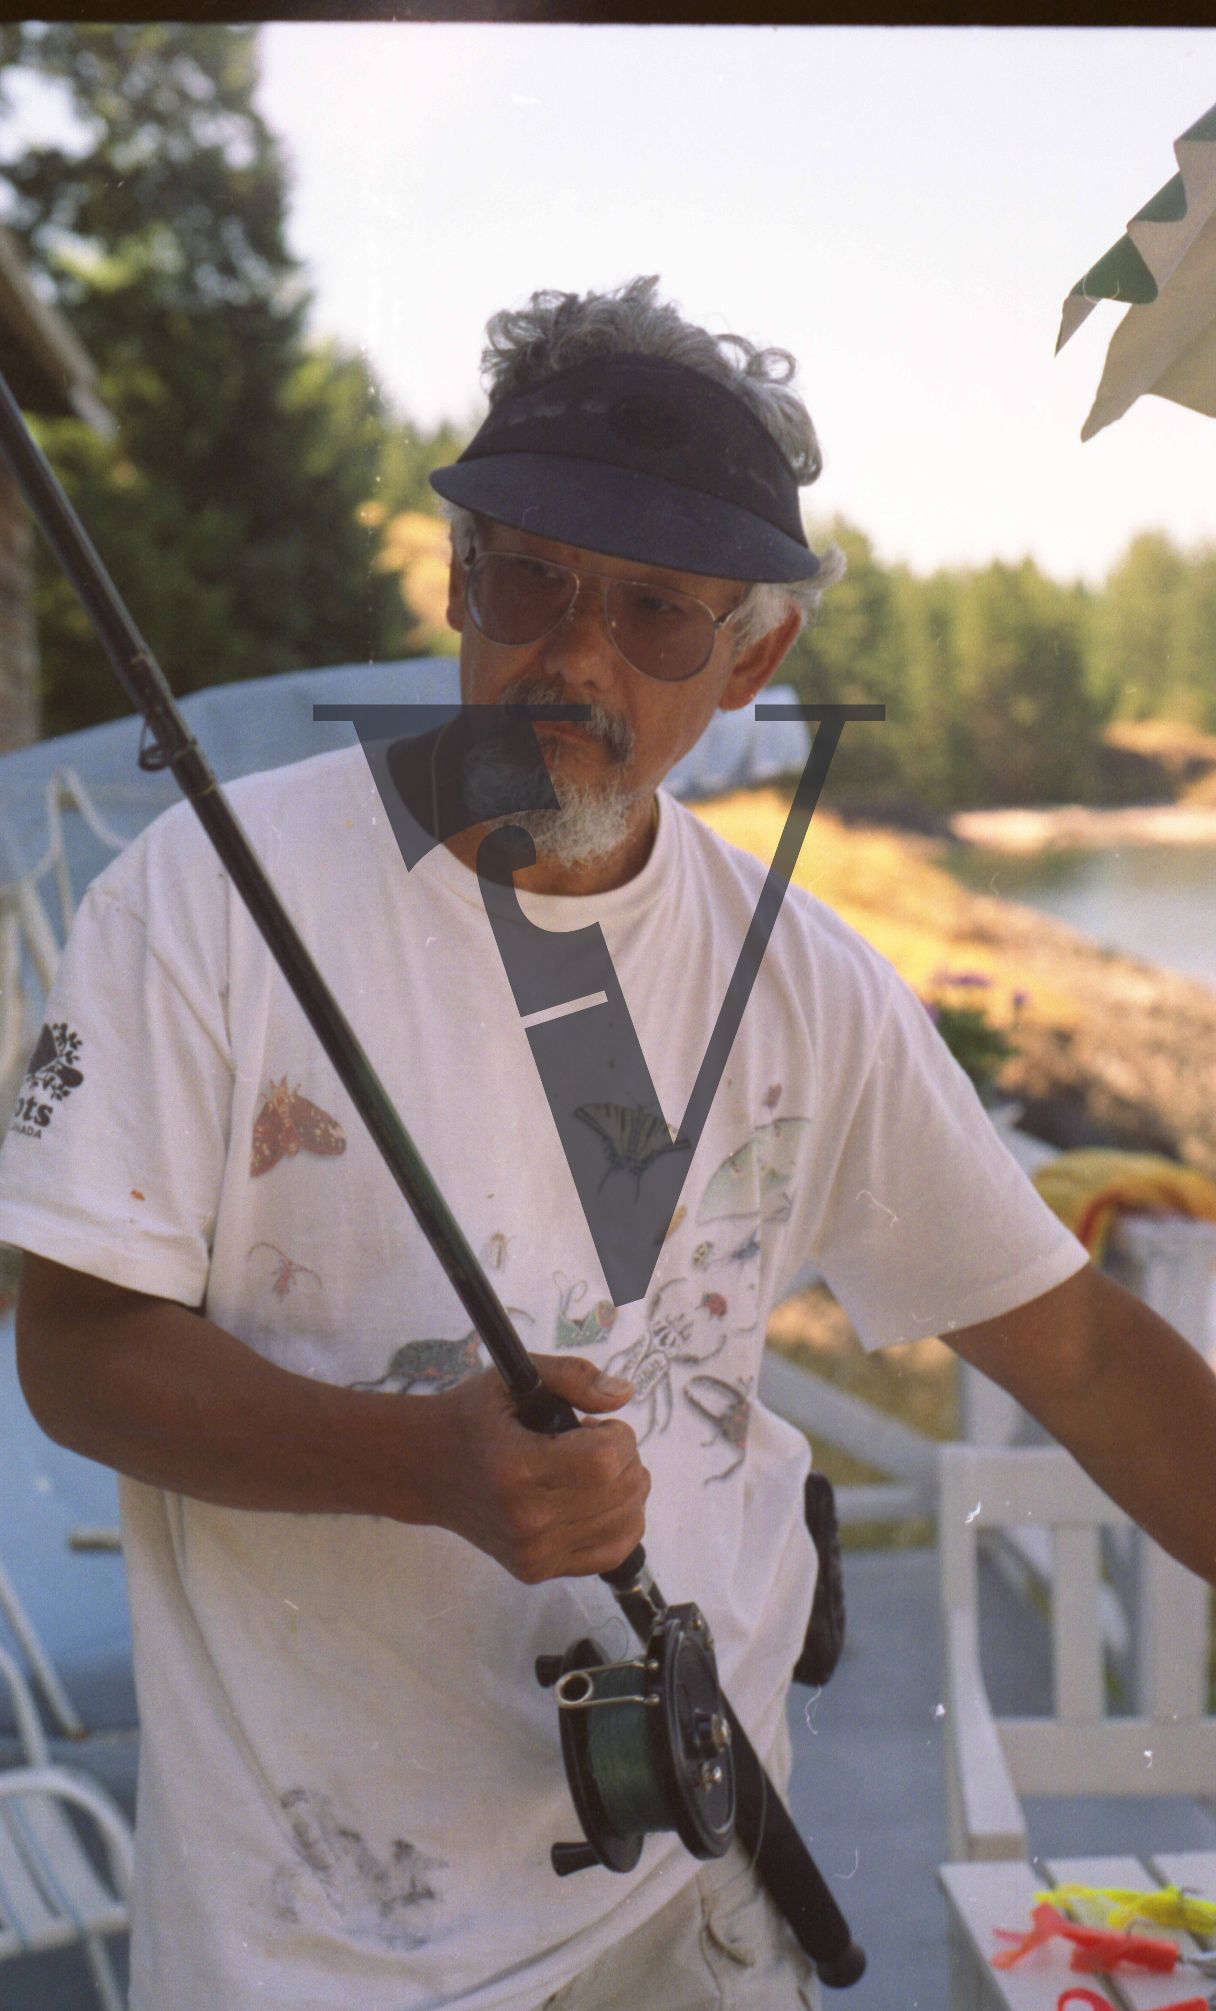 Osoyoos, Okanagan Valley, British Columbia, Davd Suzuki fishing rod, portrait.